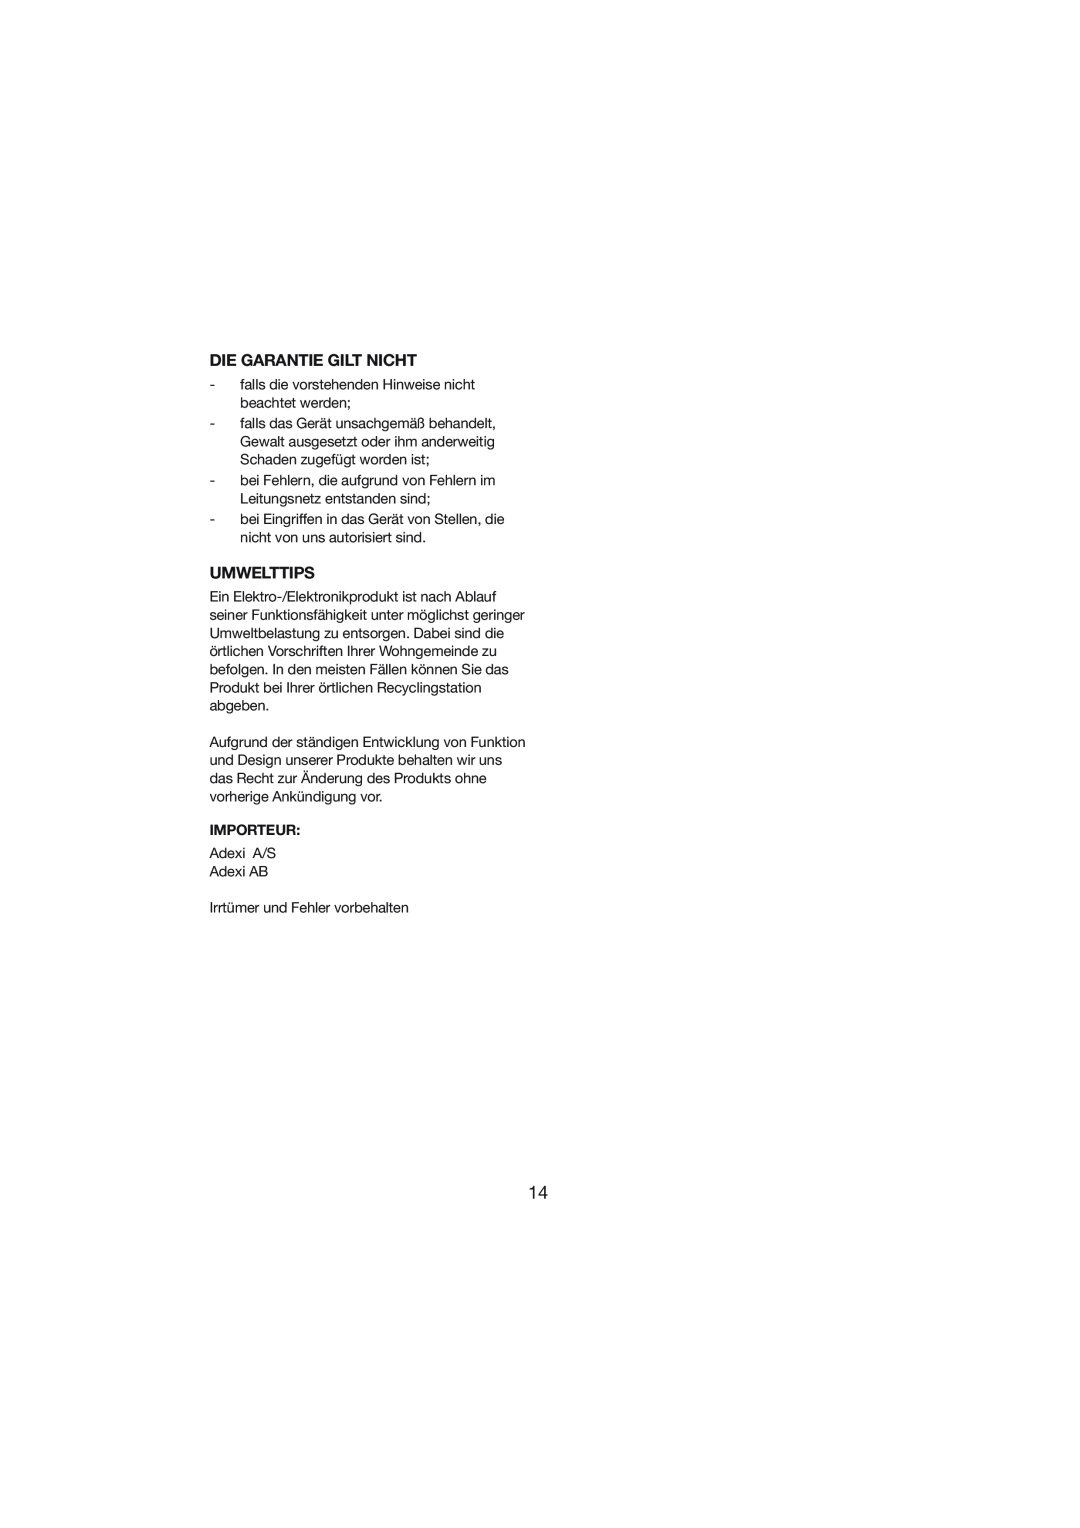 Melissa 246-003 manual Die Garantie Gilt Nicht, Umwelttips, Importeur 